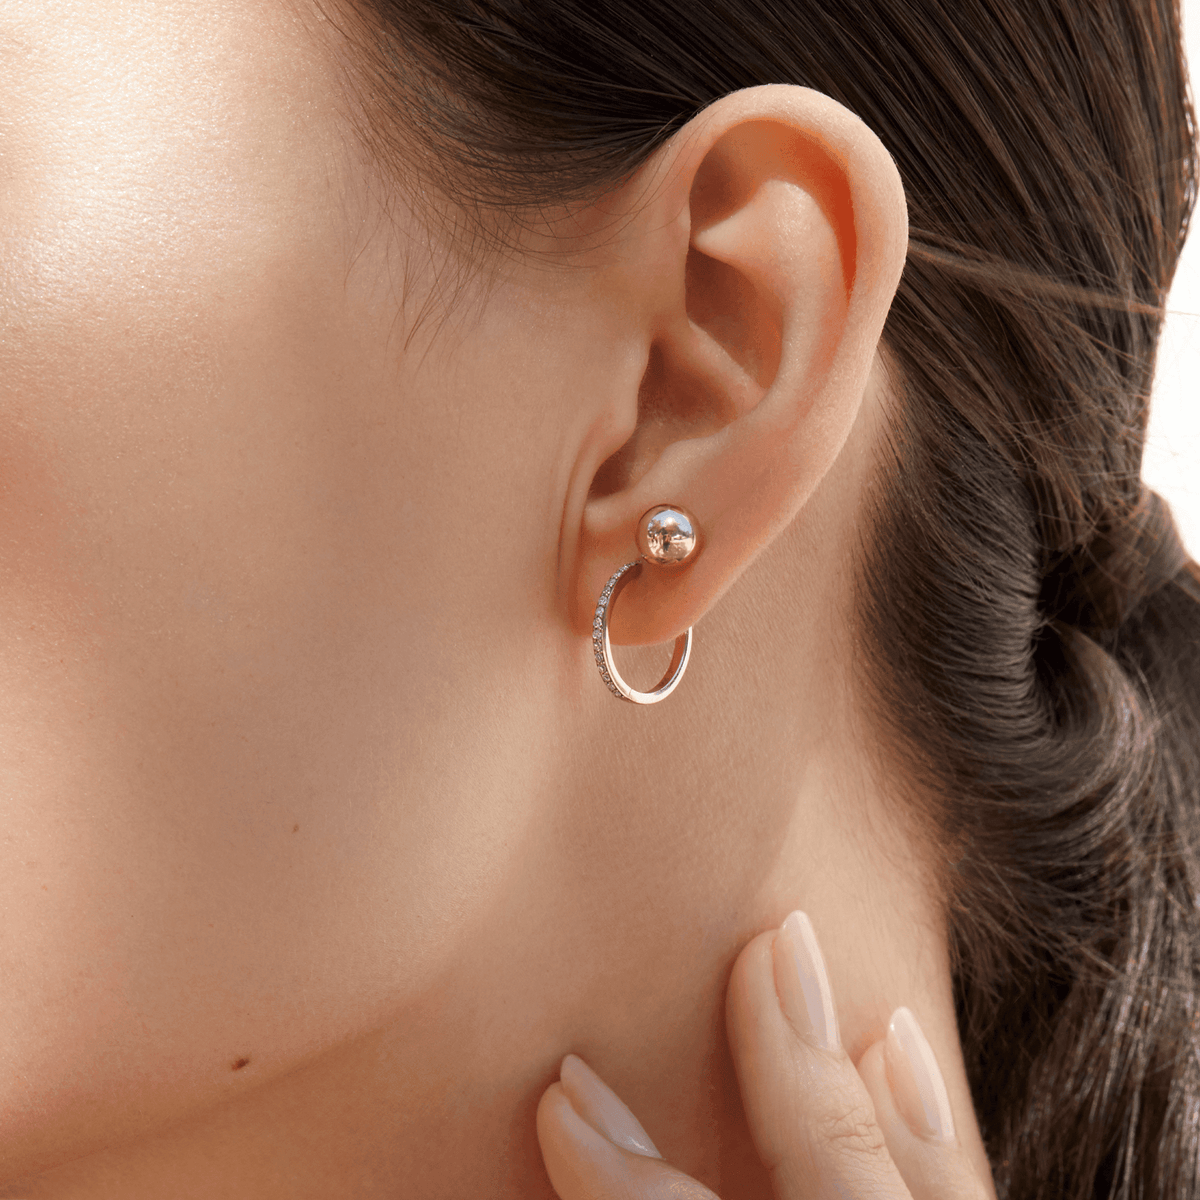 Small Hoop Earrings Huggie Hoops Earrings Hoop Earrings  Etsy  Hoop  earrings small Minimalist earrings Diamond shape earrings